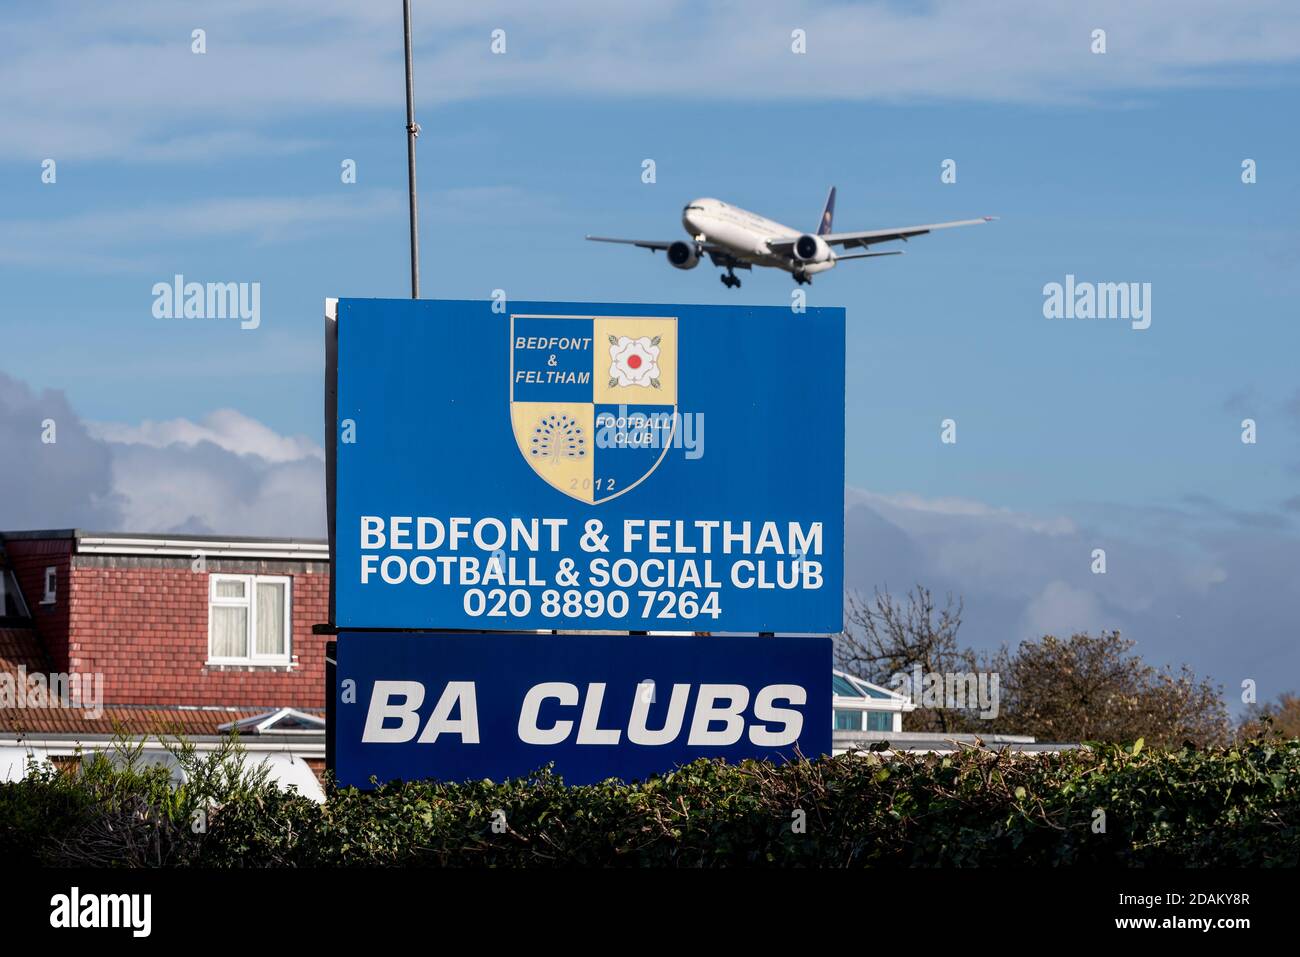 Aereo jet Airliner in avvicinamento per atterrare all'aeroporto Heathrow di Londra, Regno Unito, oltre Bedfont & Feltham Football & Social Club. BA Club. Basso sopra casa Foto Stock